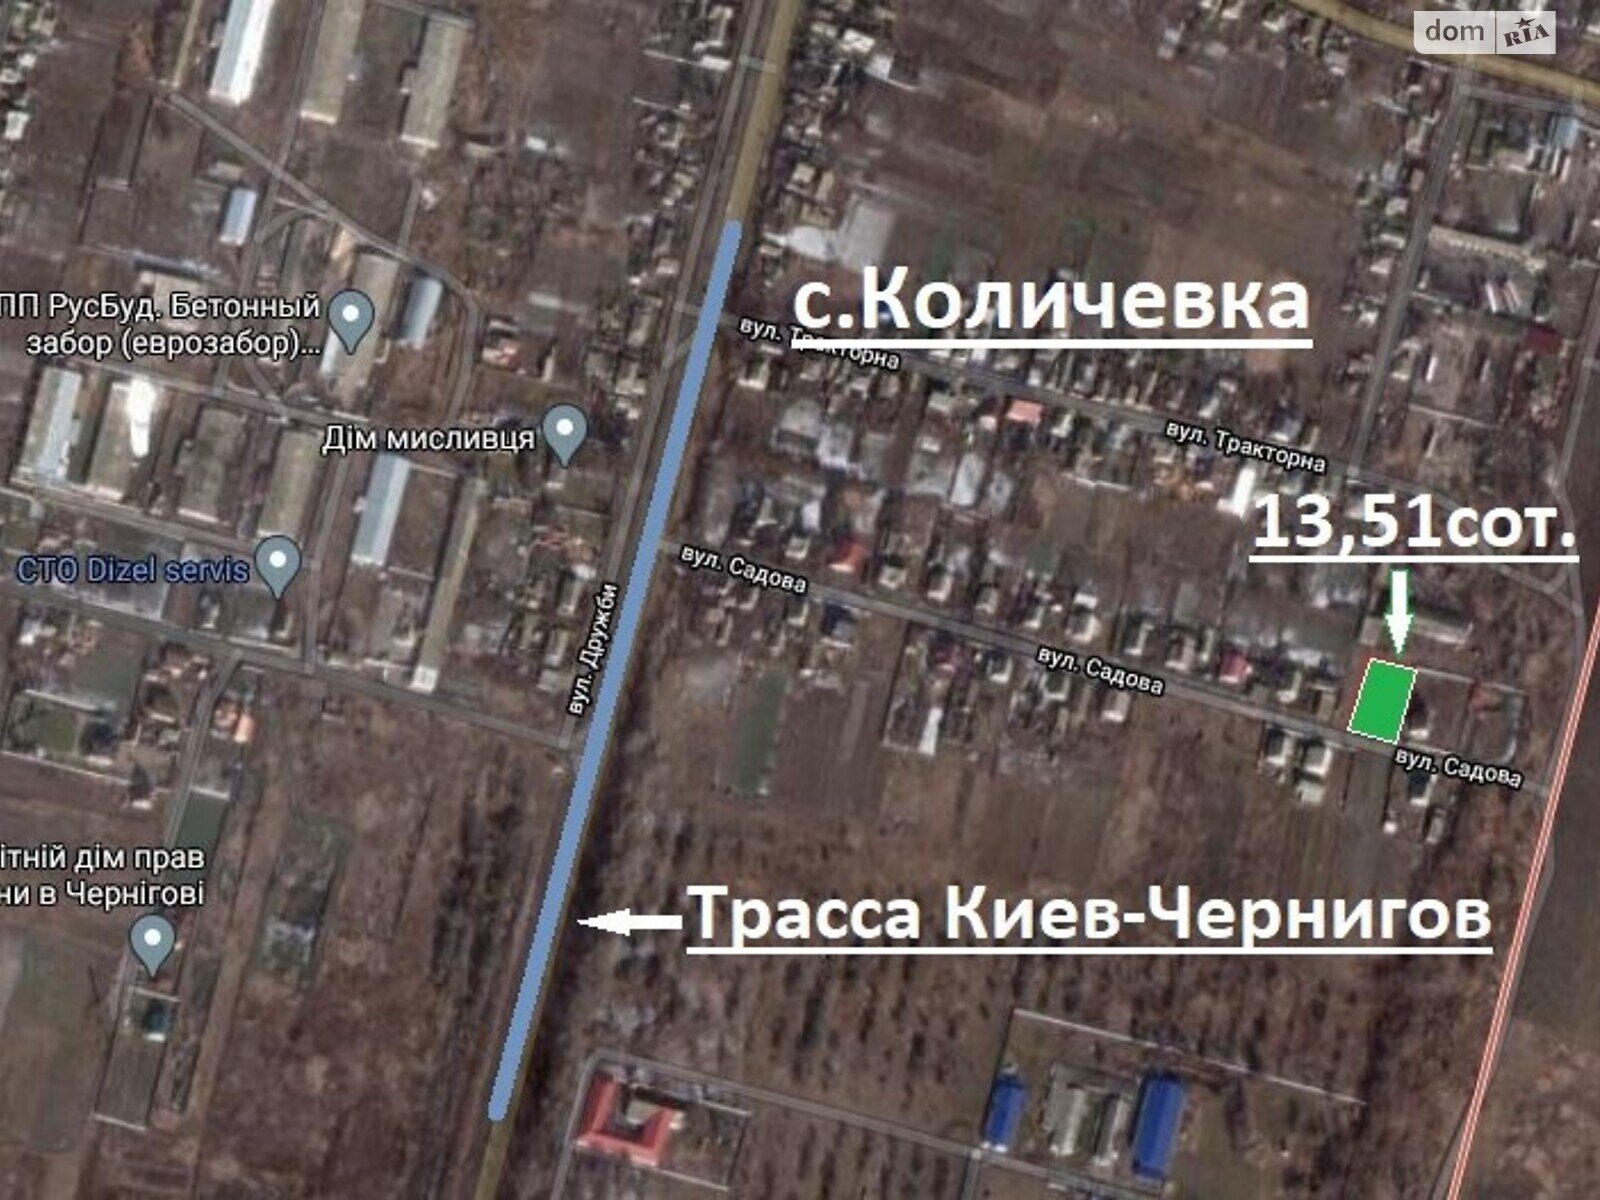 Земельный участок под жилую застройку в Колычевке, площадь 13.51 сотки фото 1